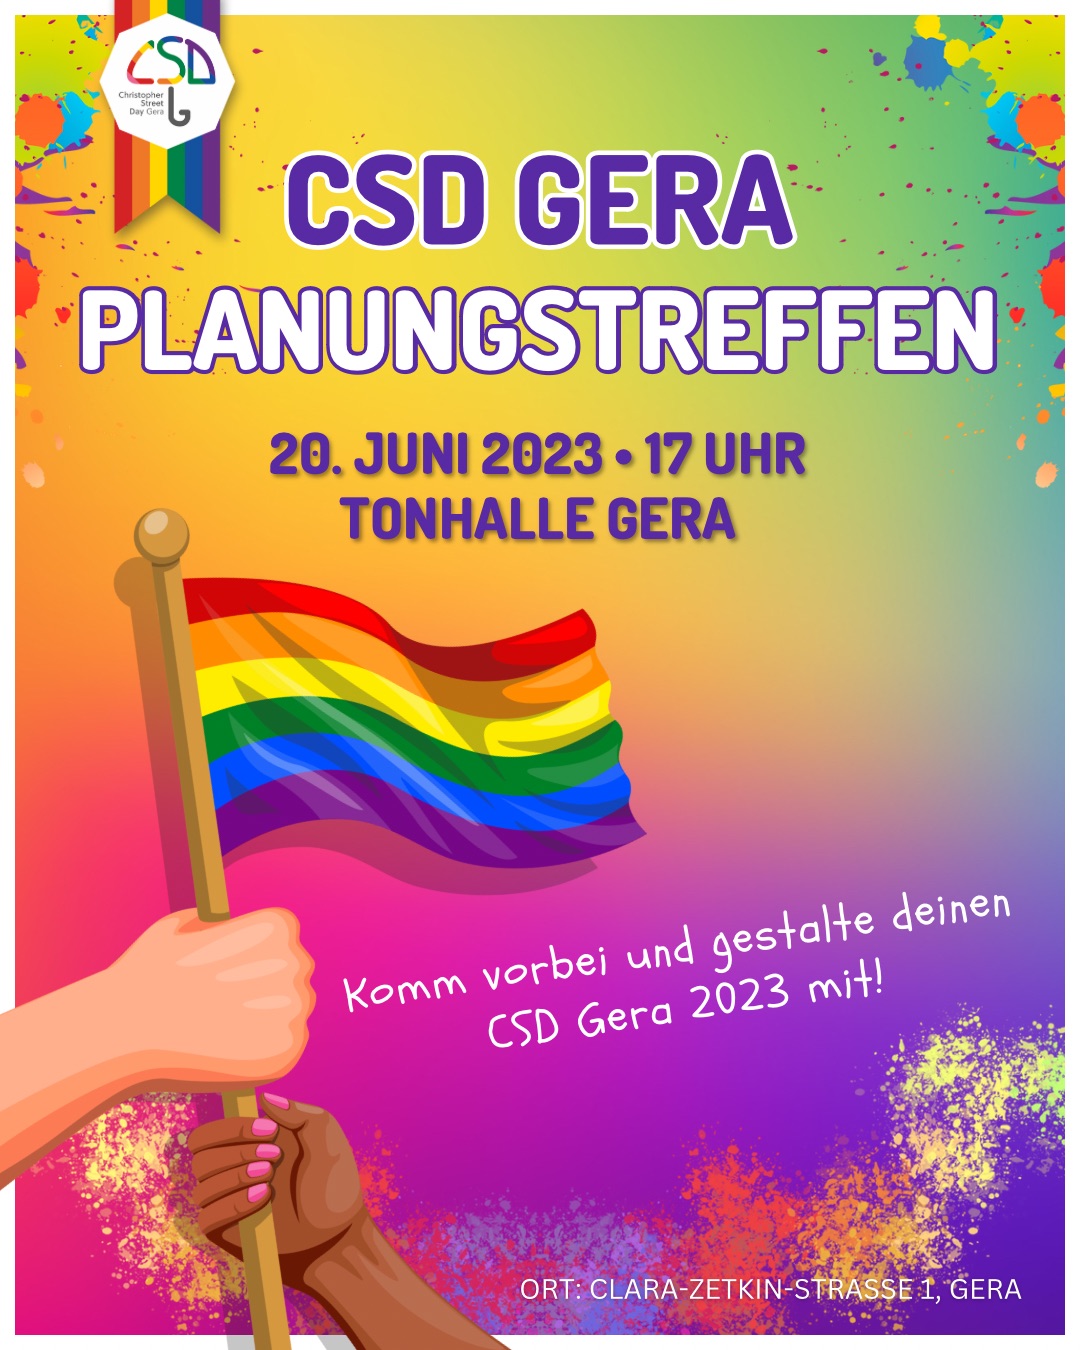 Einladung: CSD Gera Planungstreffen (20. Juni 2023, 17 Uhr, Tonhalle Gera)